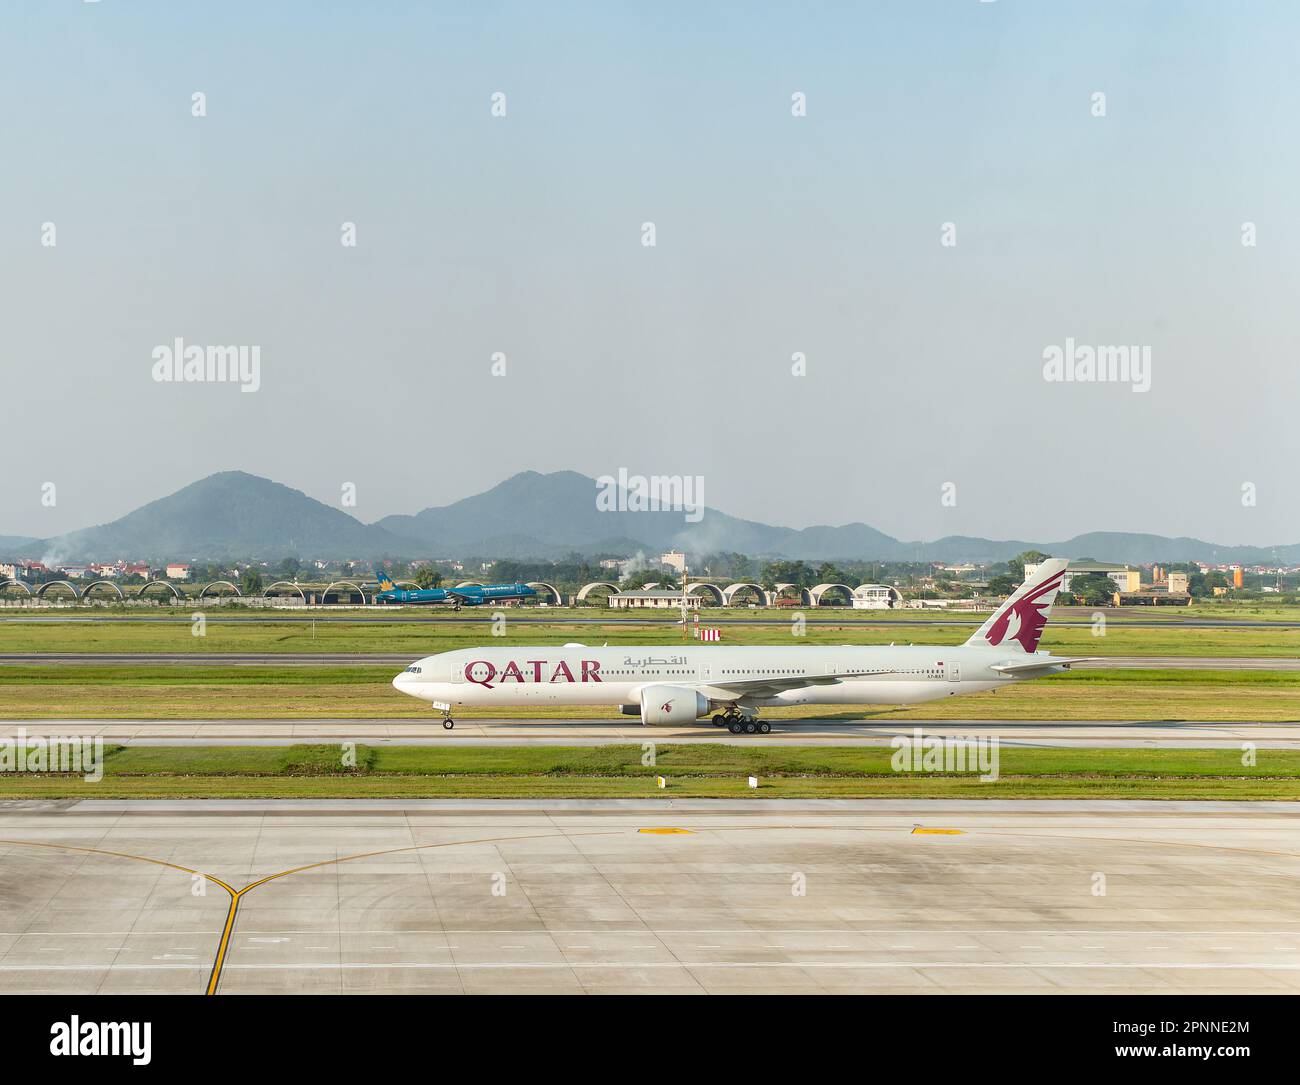 Qatar Airway Boeing 777-300 tassiing all'aeroporto internazionale noi Bai (NIA), il principale aeroporto di Hanoi, la capitale del Vietnam. Vietnam Airlines Airbus Foto Stock